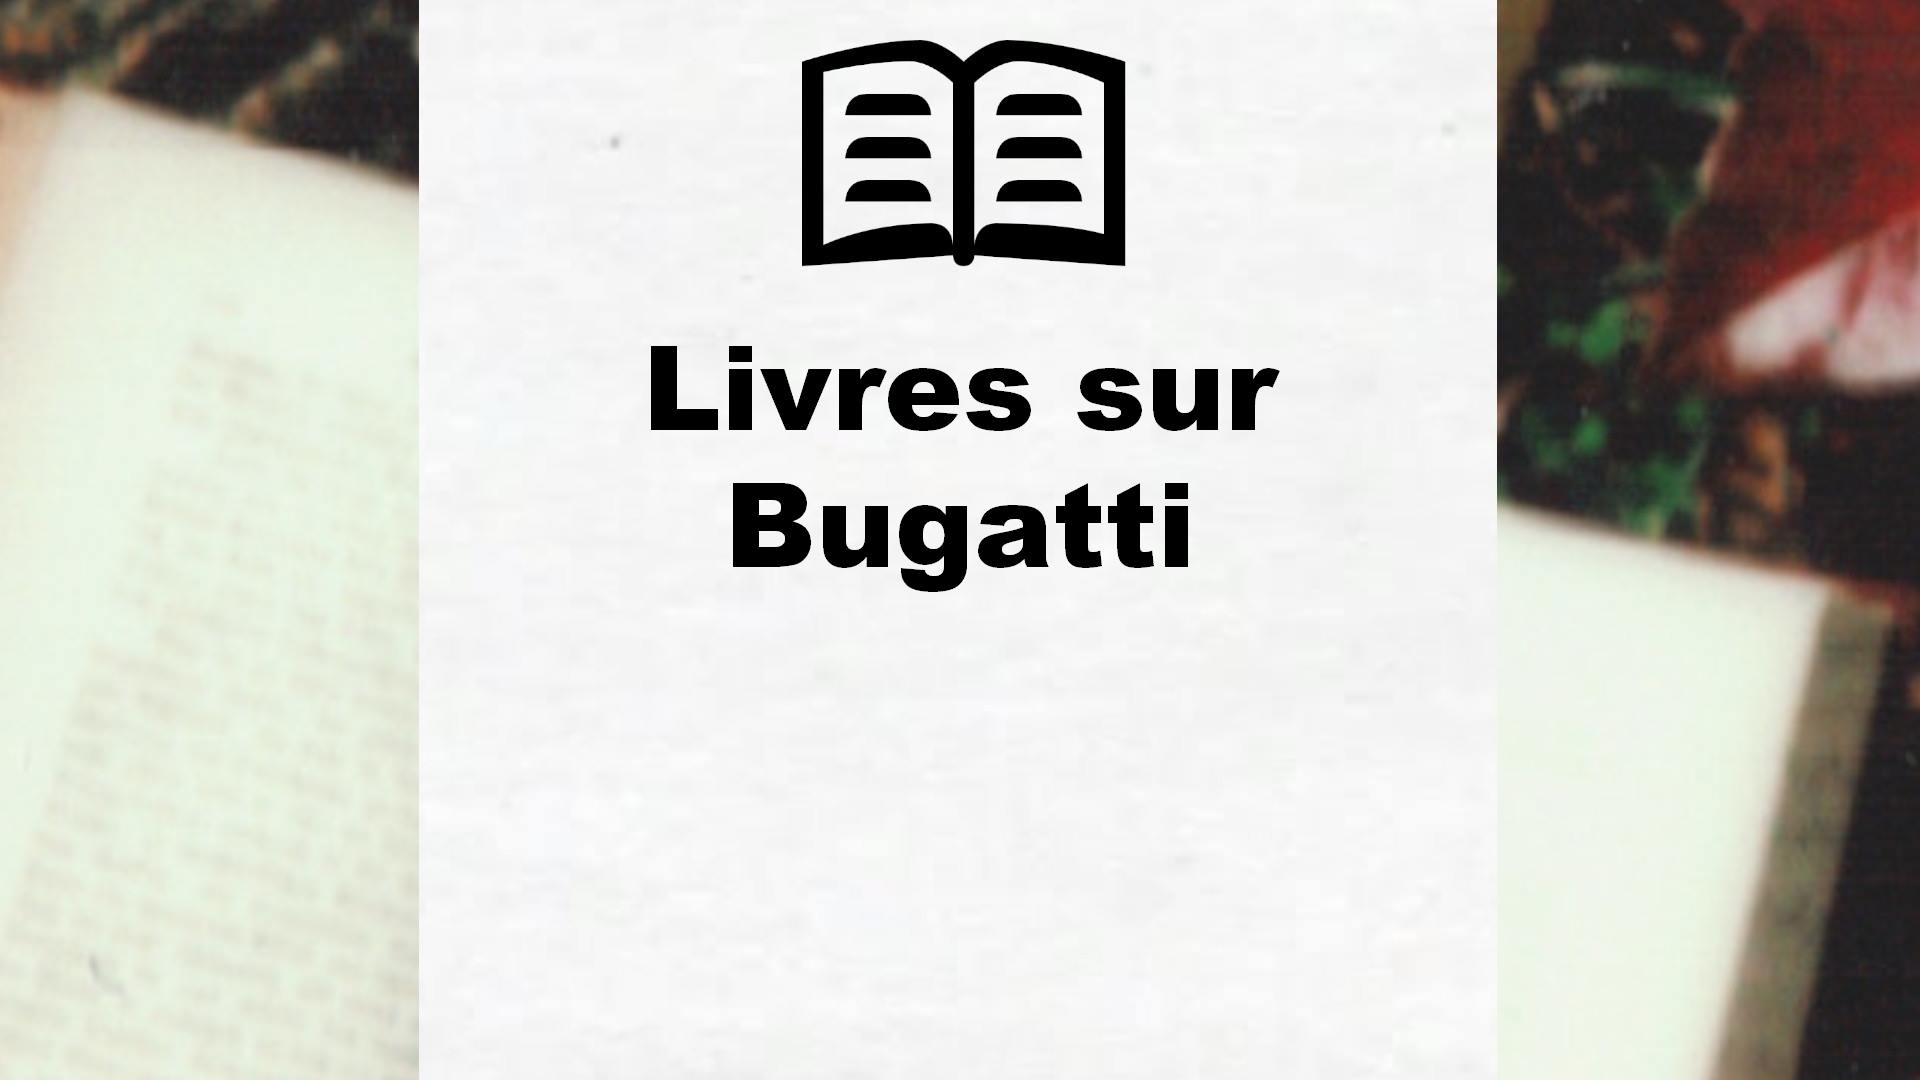 Livres sur Bugatti